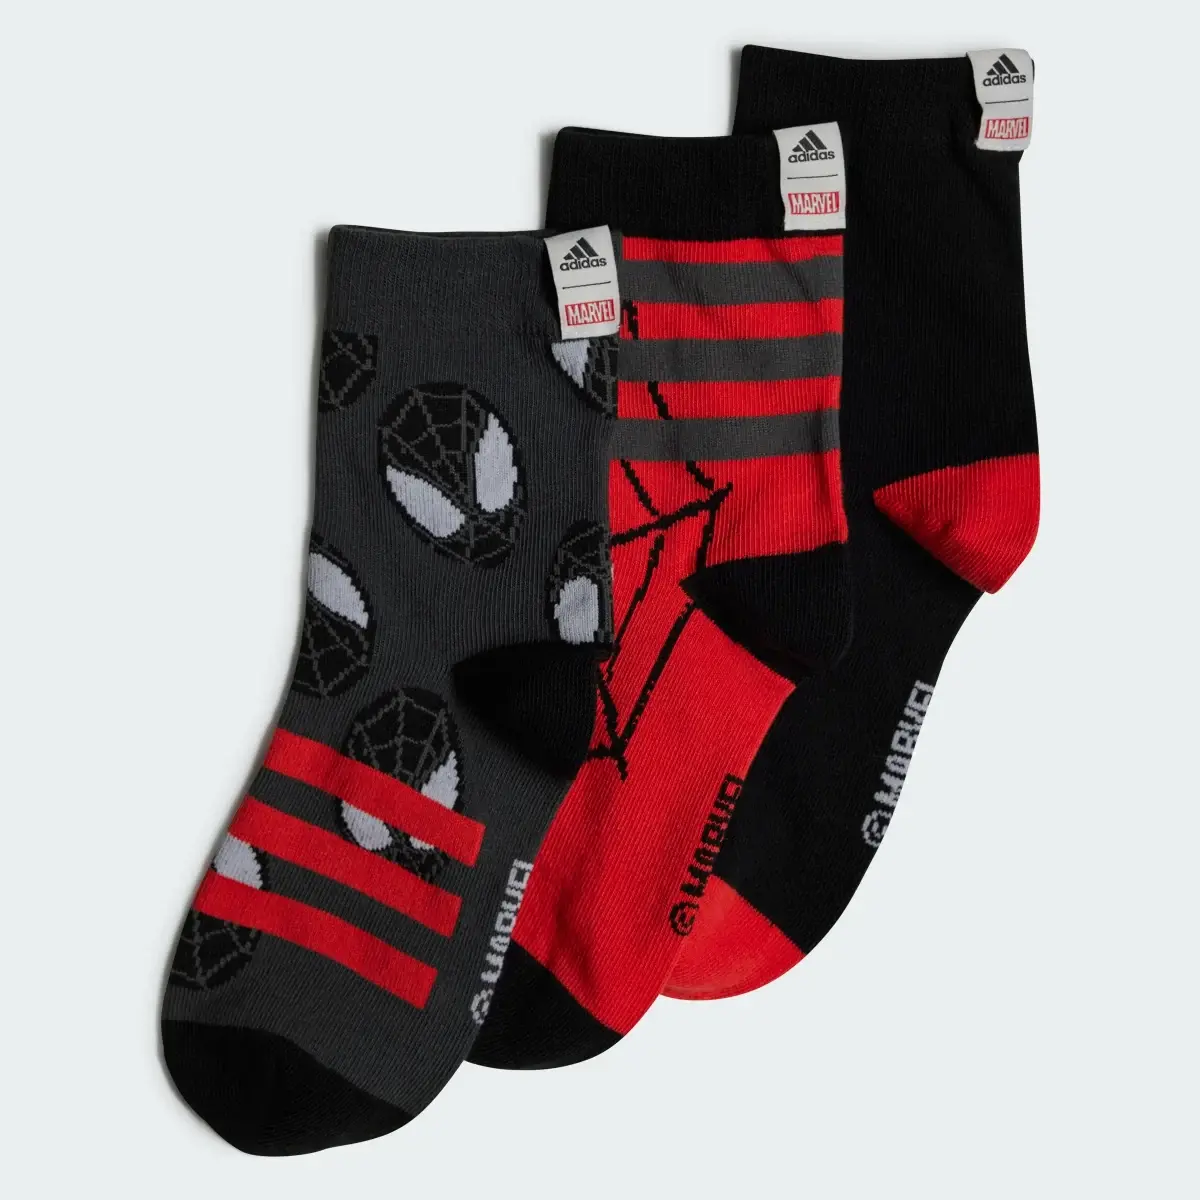 Adidas Calcetines clásicos Marvel Spider-Man. 2